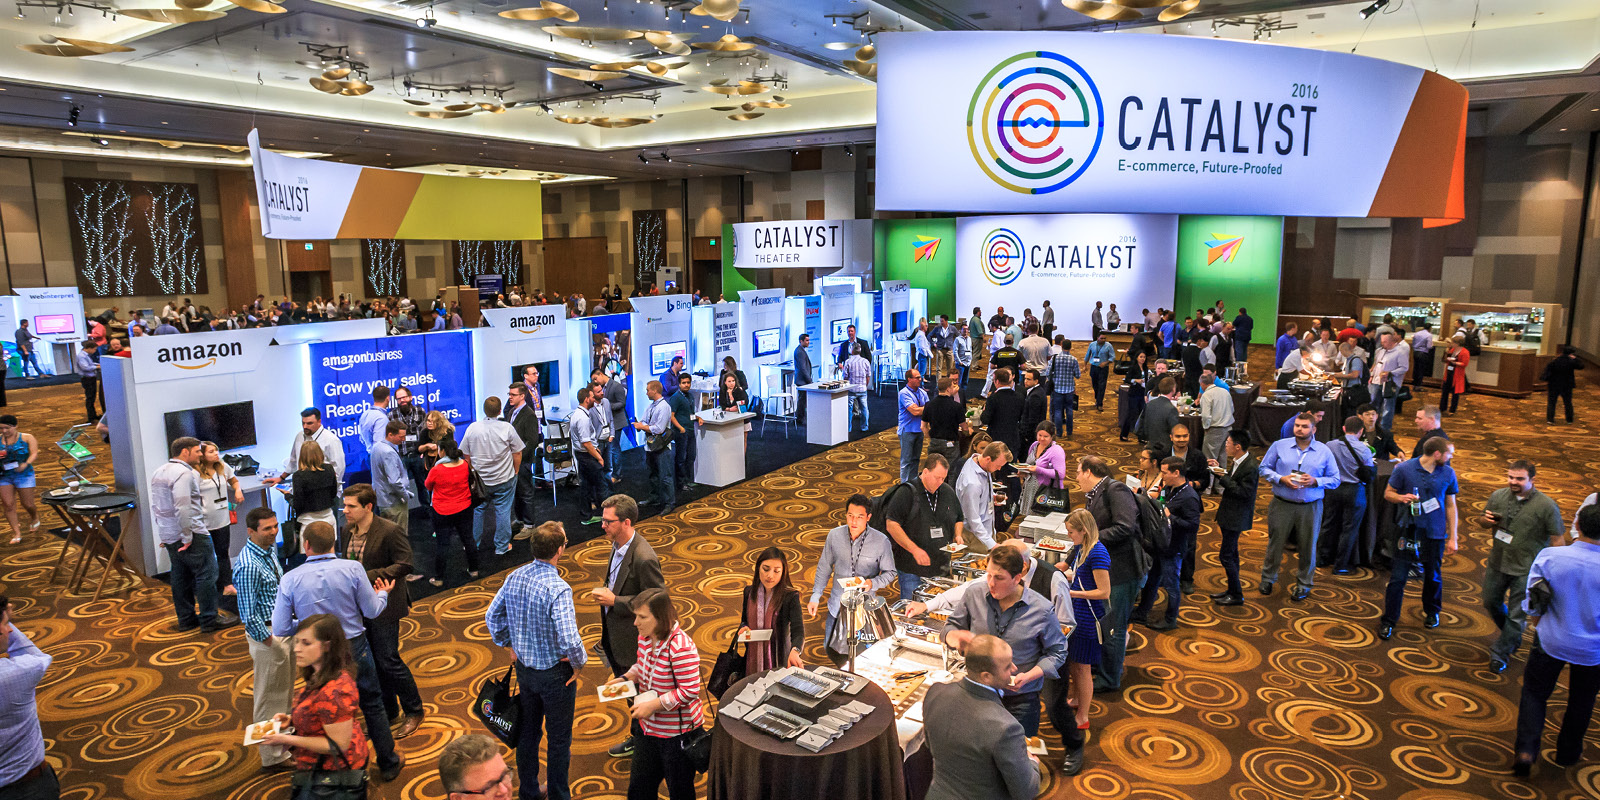 Hill & Partners Event Branded Environment for Catalyst 2016 ChannelAdvisor